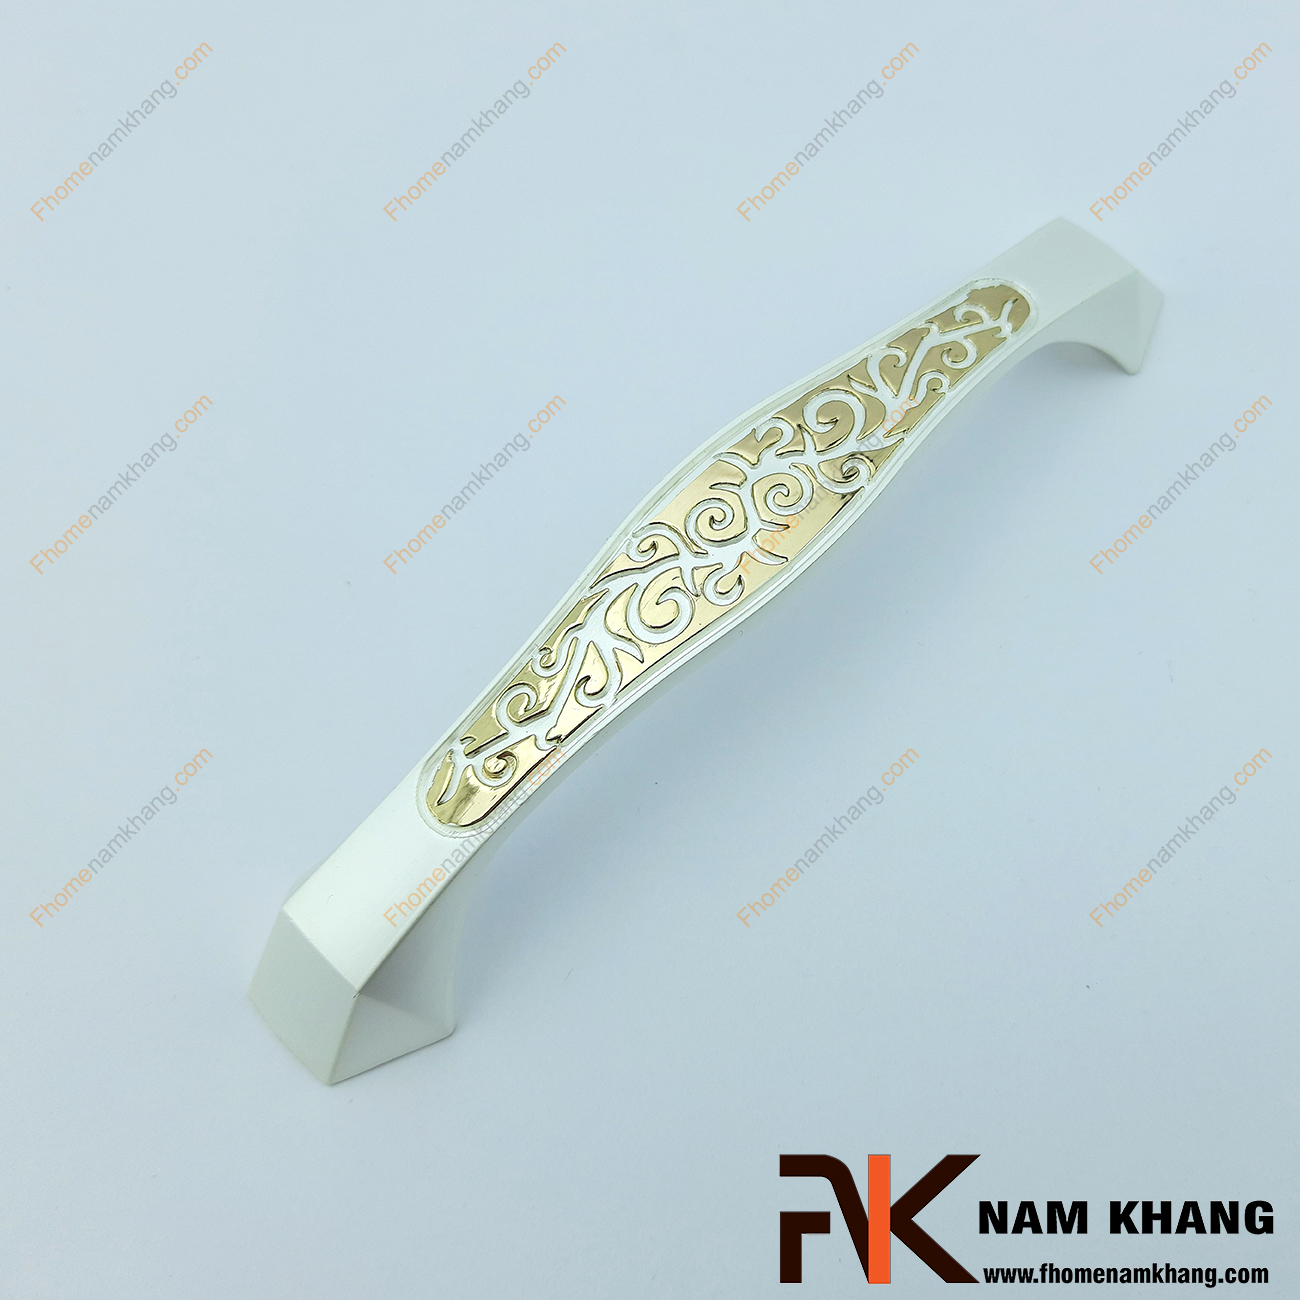 Tay nắm tủ màu trắng vàng NK401-128TV mang một thiết kế đặc biệt khi phối hợp nền trắng sản xuất từ chất liệu hợp kim cao cấp và các đường vân hoa nổi trên bề mặt thân tay nắm